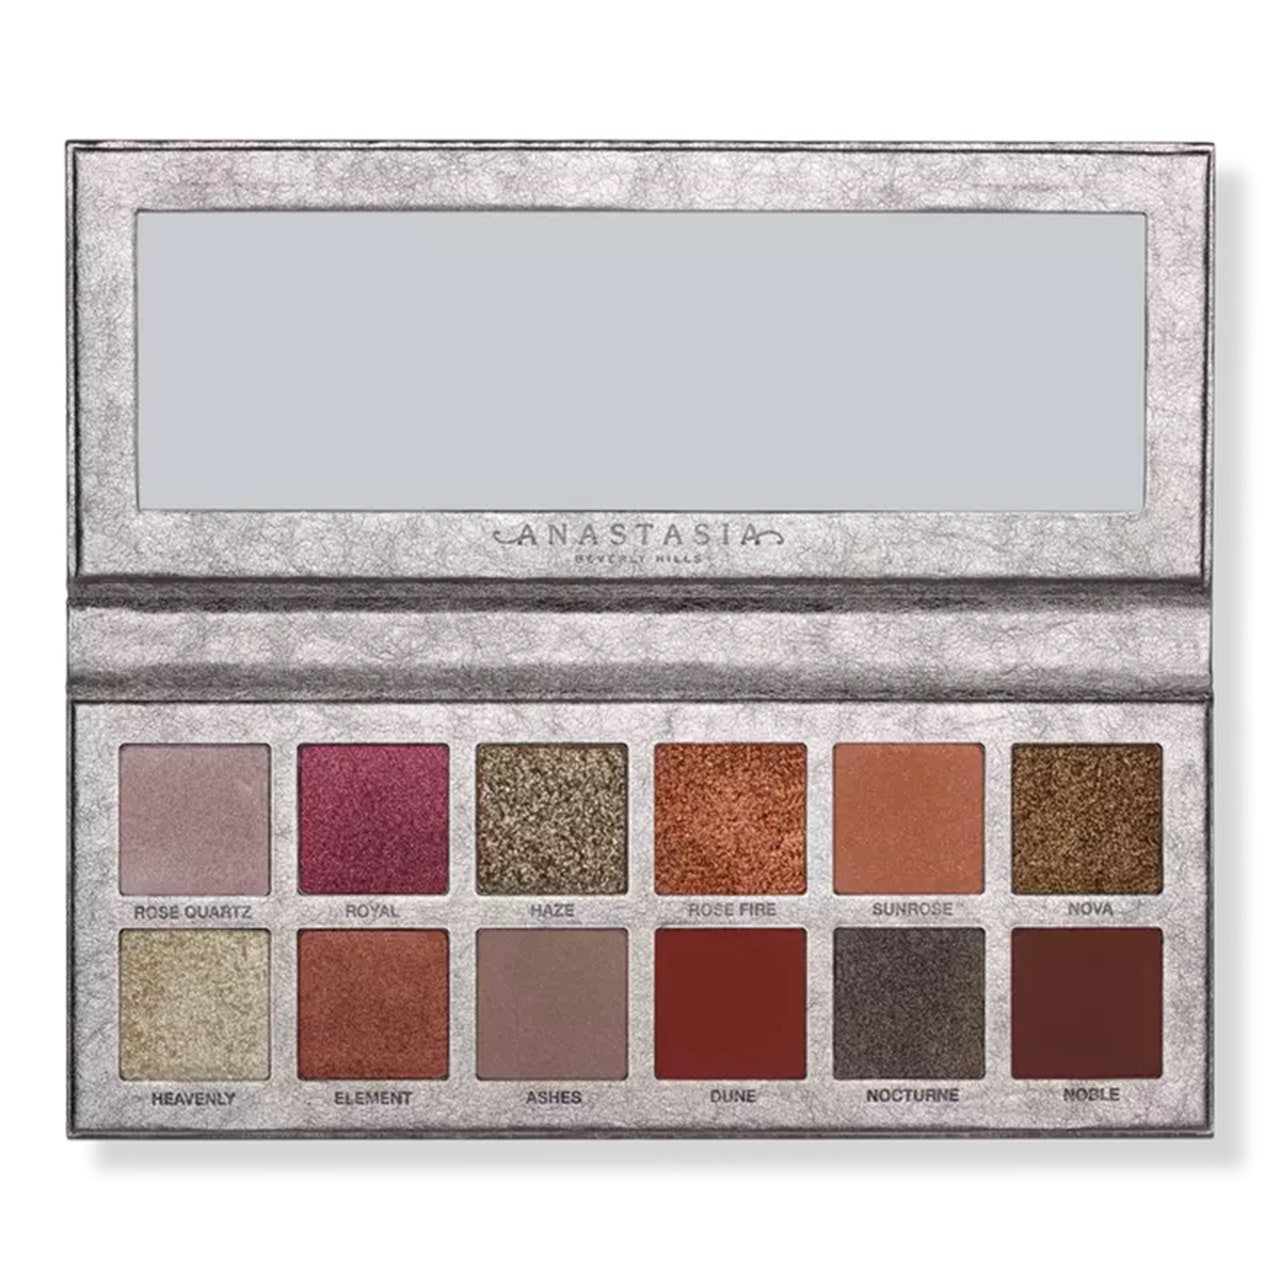 Anastasia Beverly Hills Rose Metals Palette, graue Palette mit 12 schimmernden Lidschatten auf weißem Hintergrund